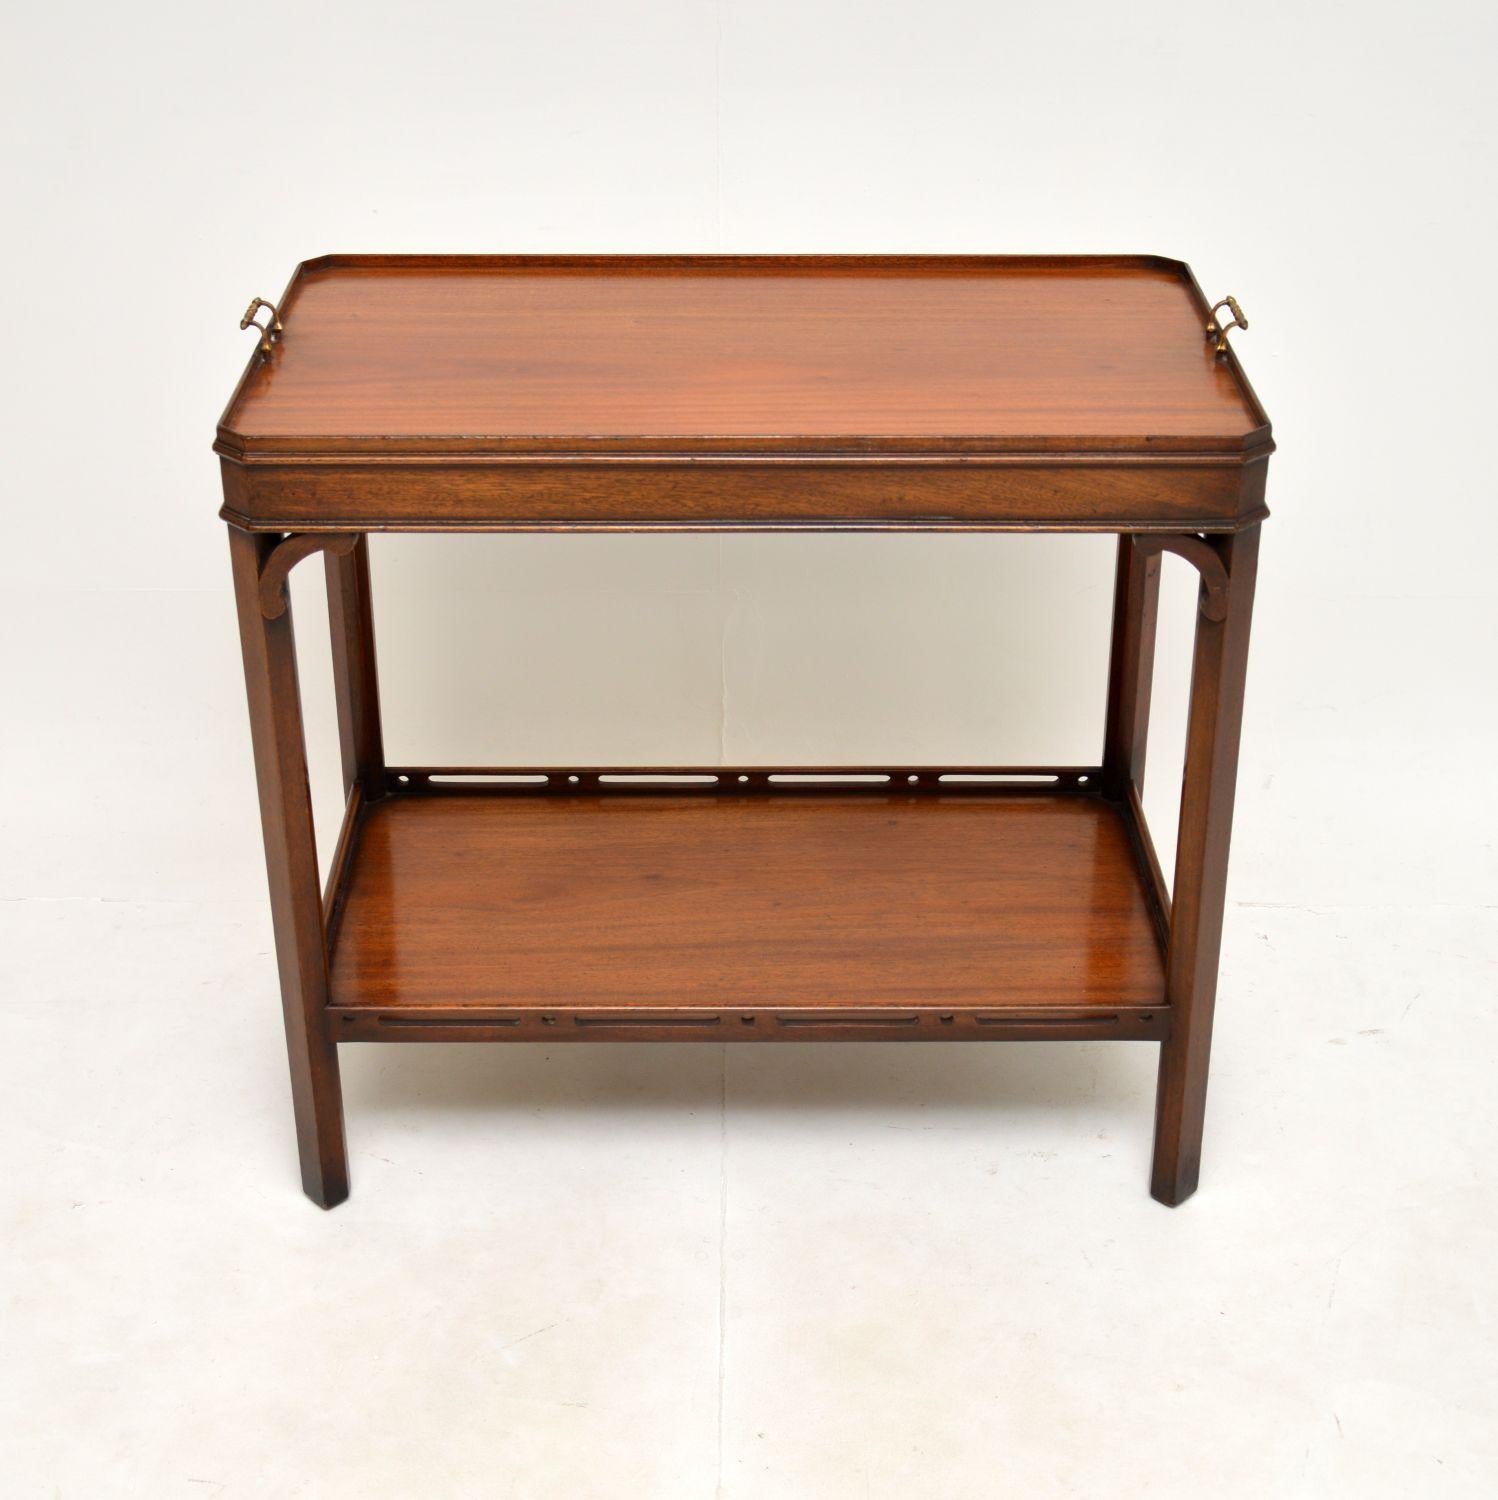 Une belle table d'appoint ancienne, fabriquée en Angleterre et datant des années 1950.

Cette table est d'une qualité fantastique et d'une taille utile, idéale pour une utilisation en tant que console / table de service ou table d'appoint